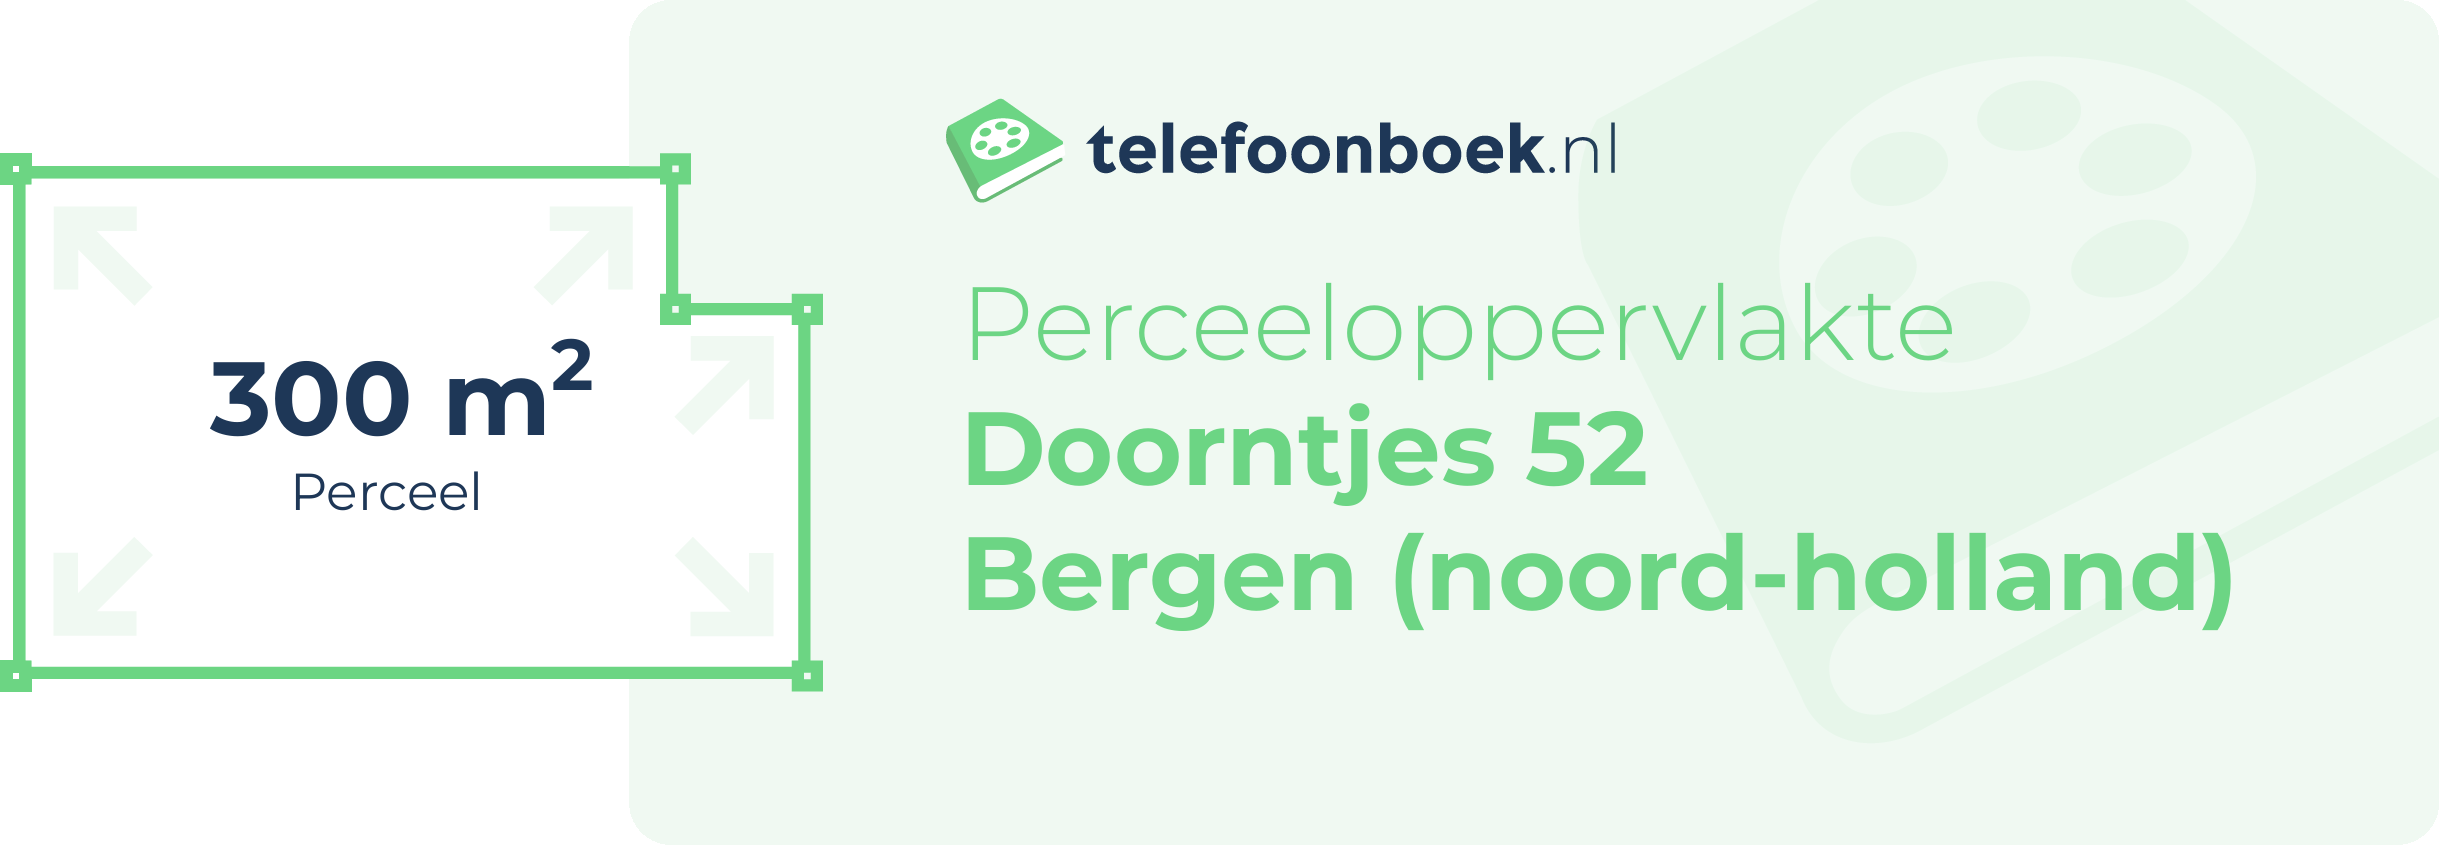 Perceeloppervlakte Doorntjes 52 Bergen (Noord-Holland)